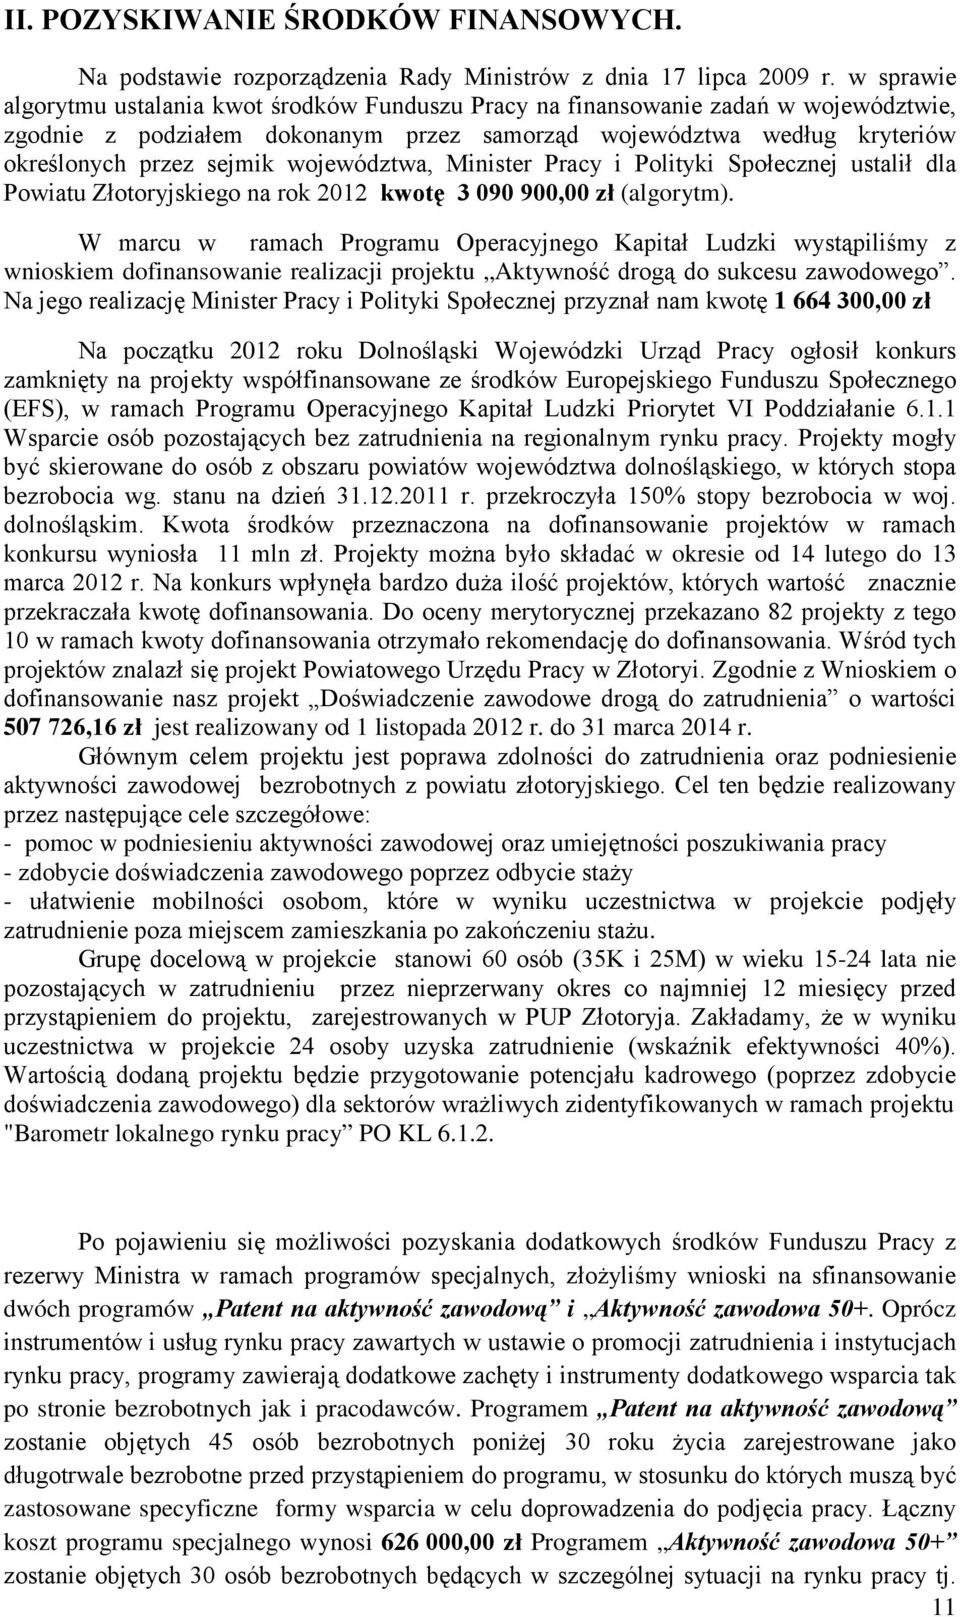 województwa, Minister Pracy i Polityki Społecznej ustalił dla Powiatu Złotoryjskiego na rok 2012 kwotę 3 090 900,00 zł (algorytm).